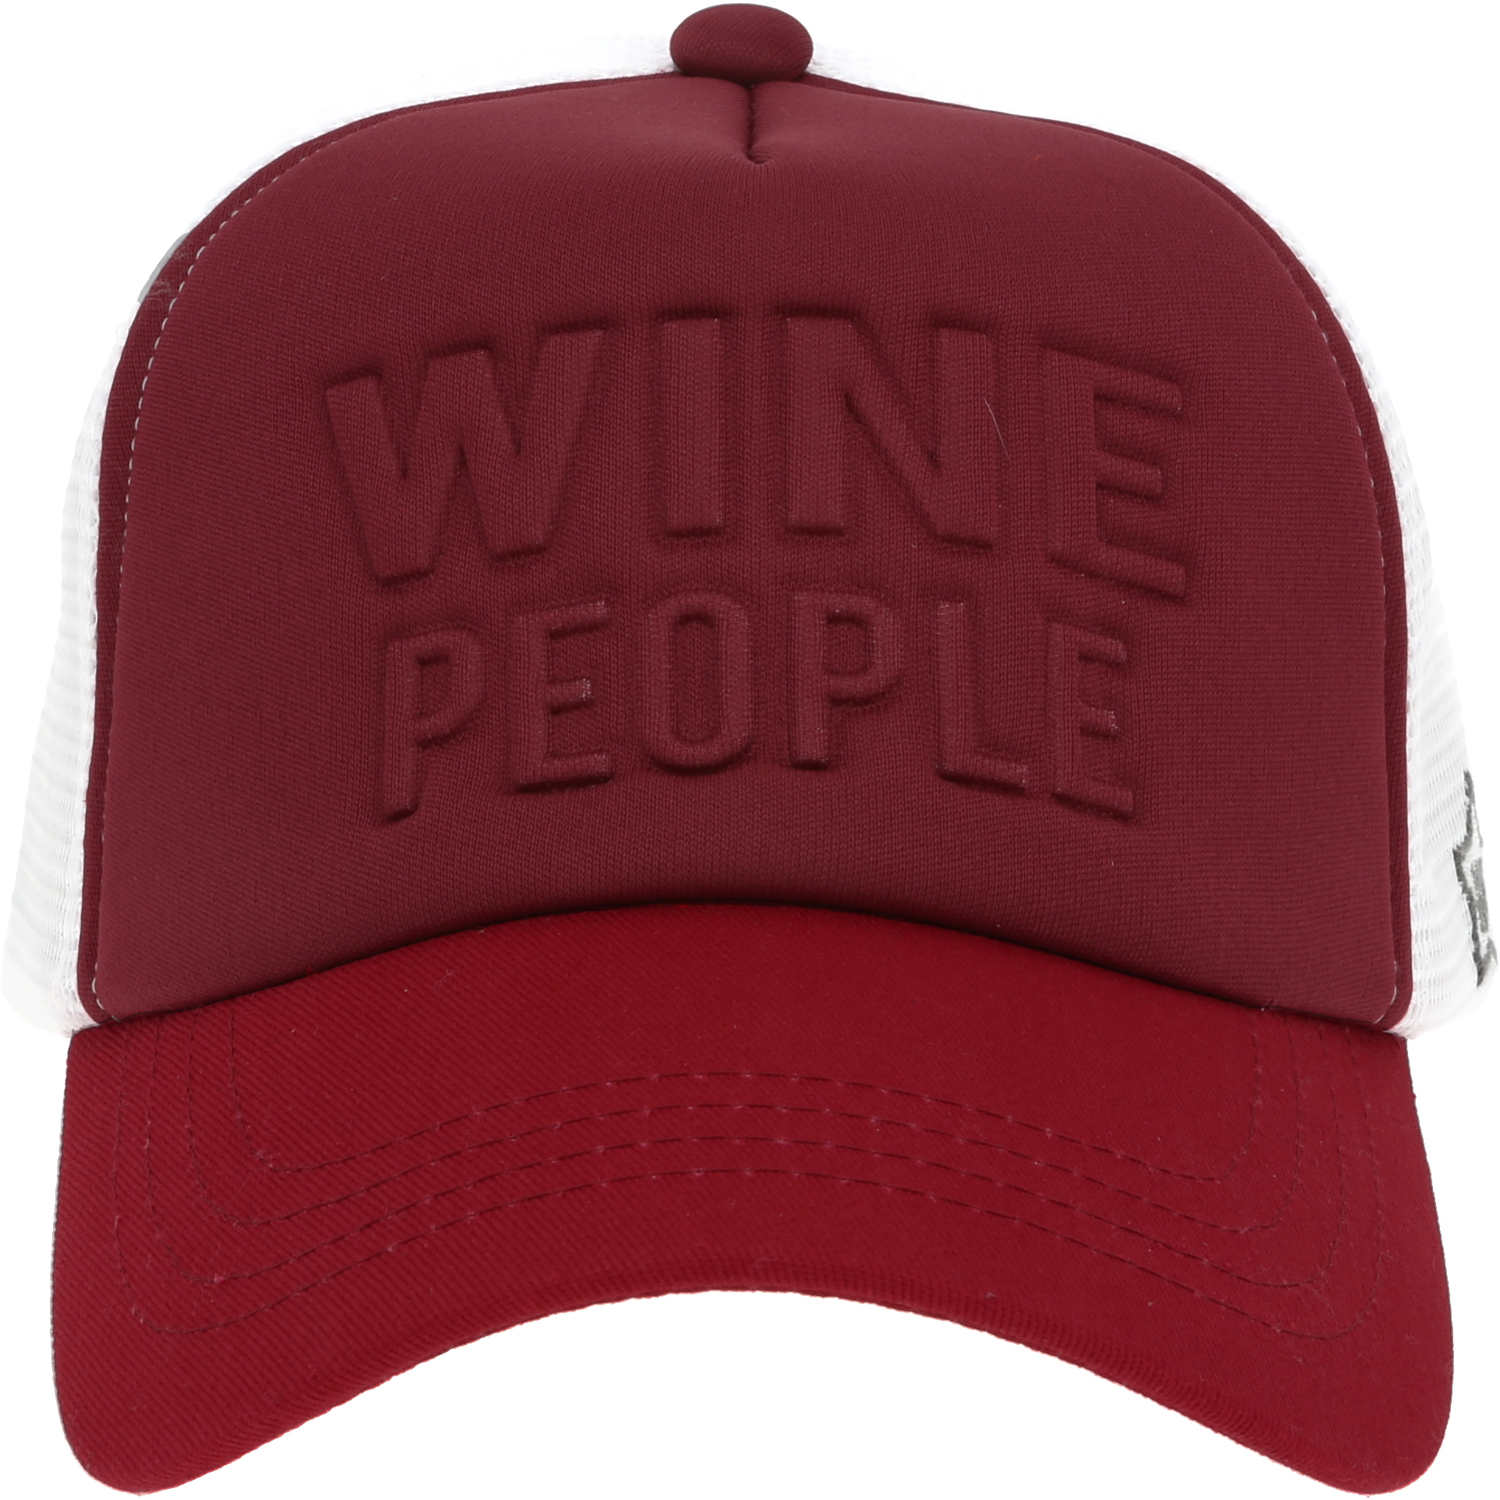 Wine People by We People - Wine People - Adjustable Maroon Neoprene Mesh Hat